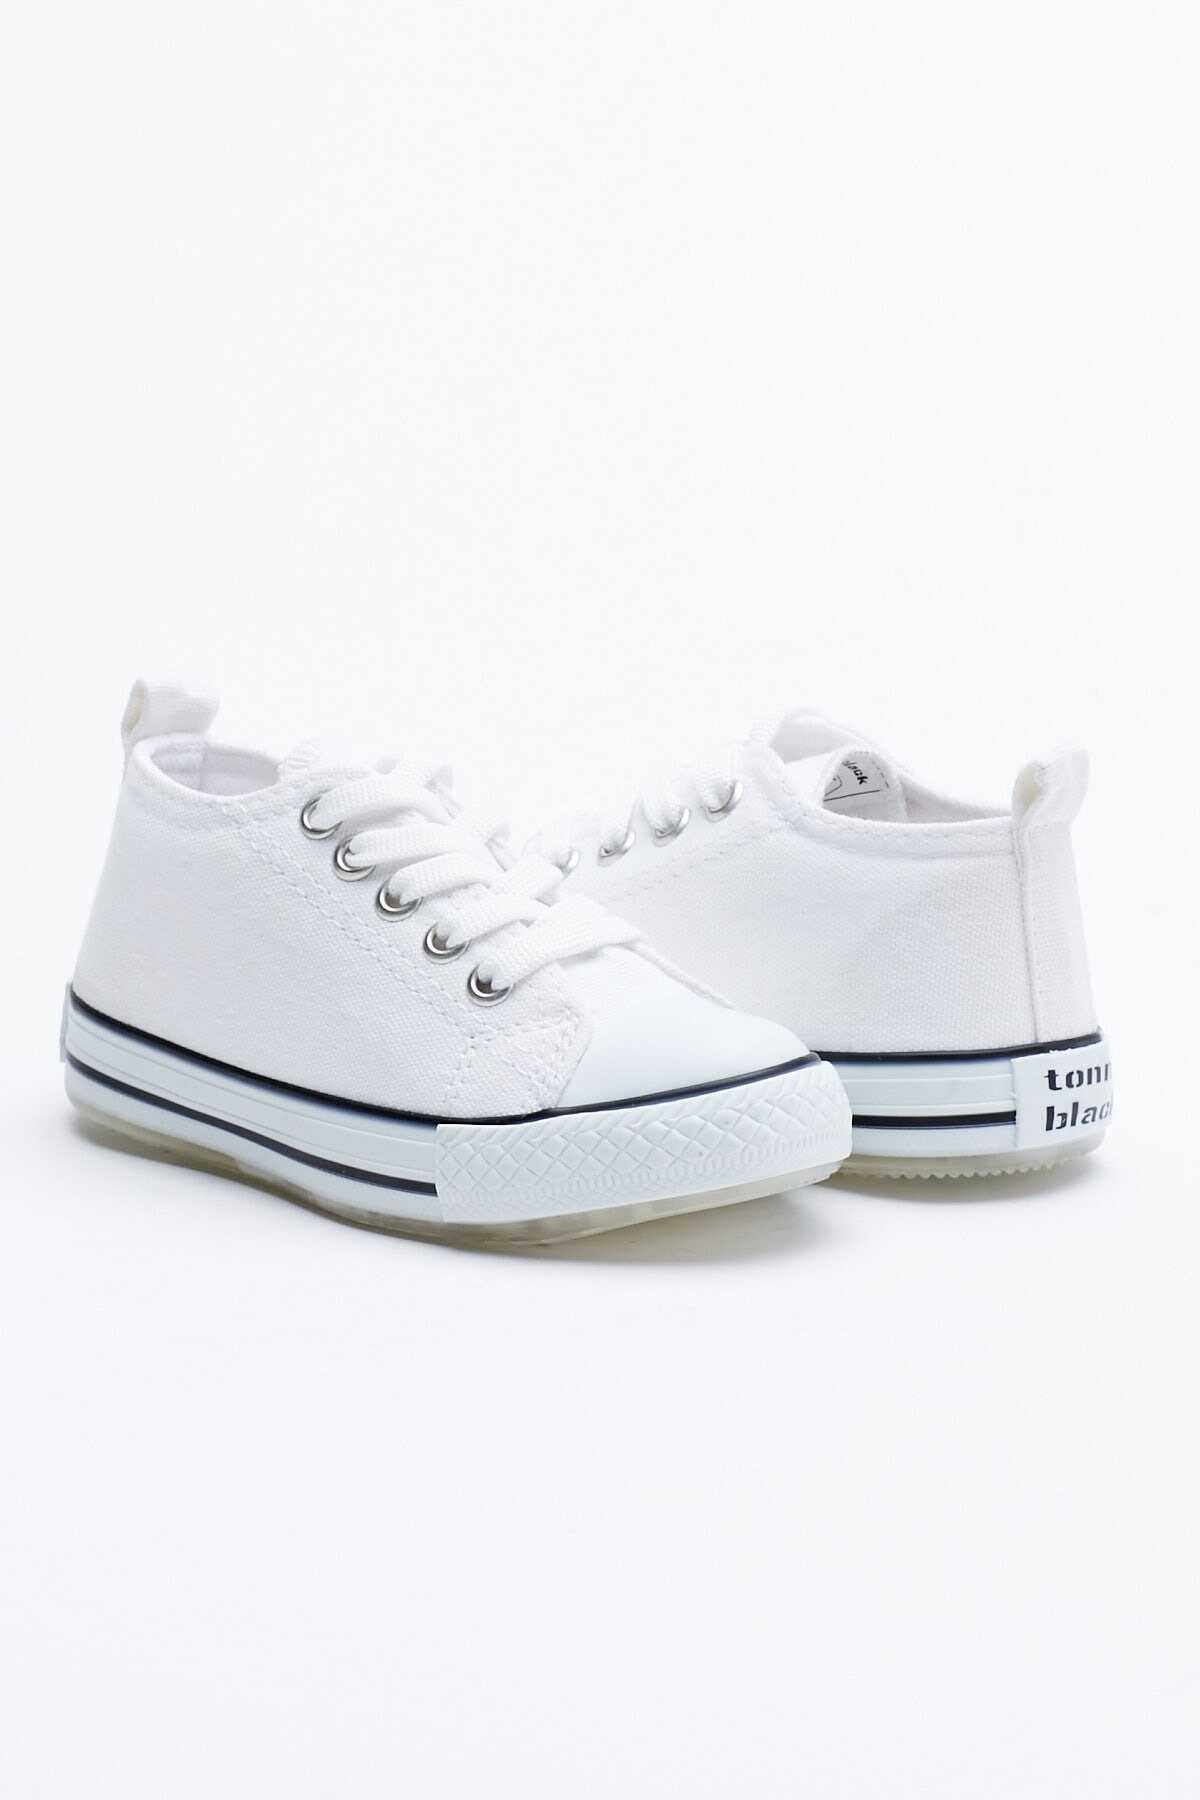 کفش ورزشی کودک پسرانه آل استار سفید برند Tonny Black